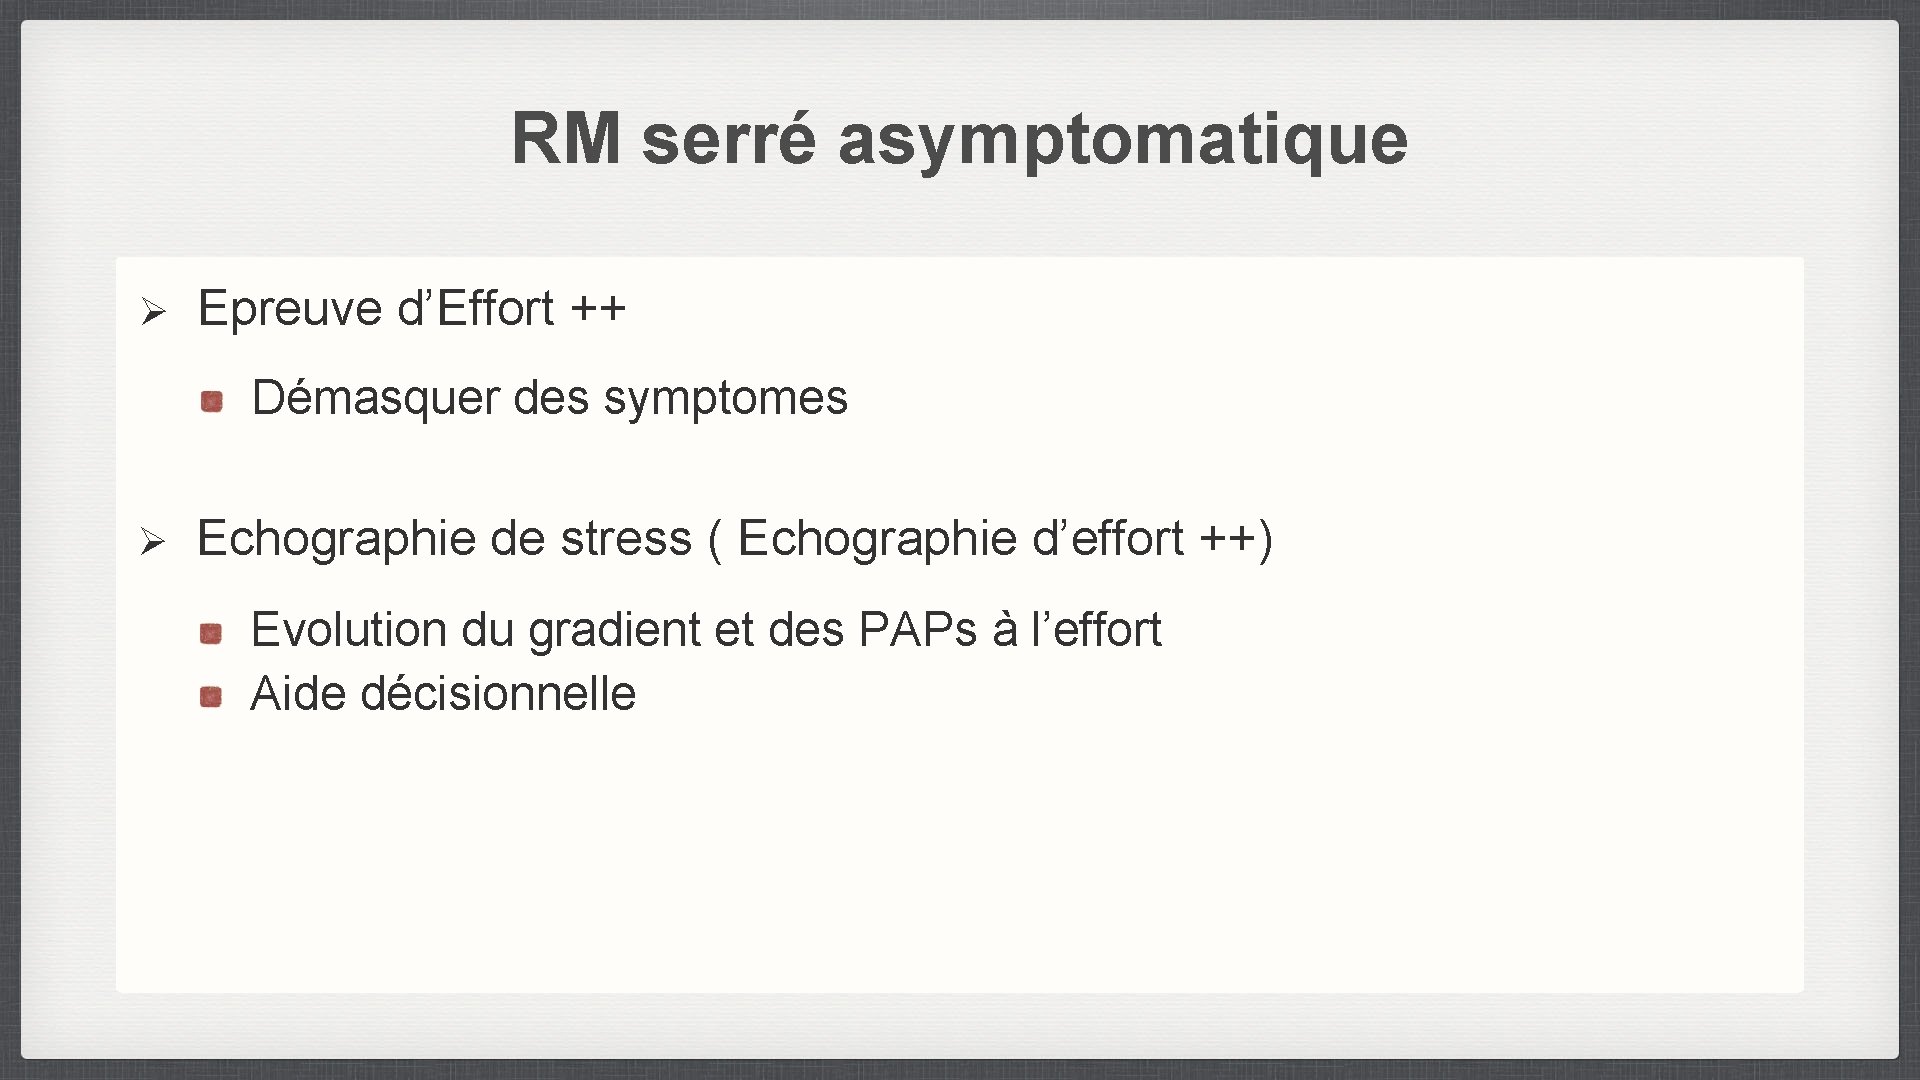 RM serré asymptomatique Ø Epreuve d’Effort ++ Démasquer des symptomes Ø Echographie de stress